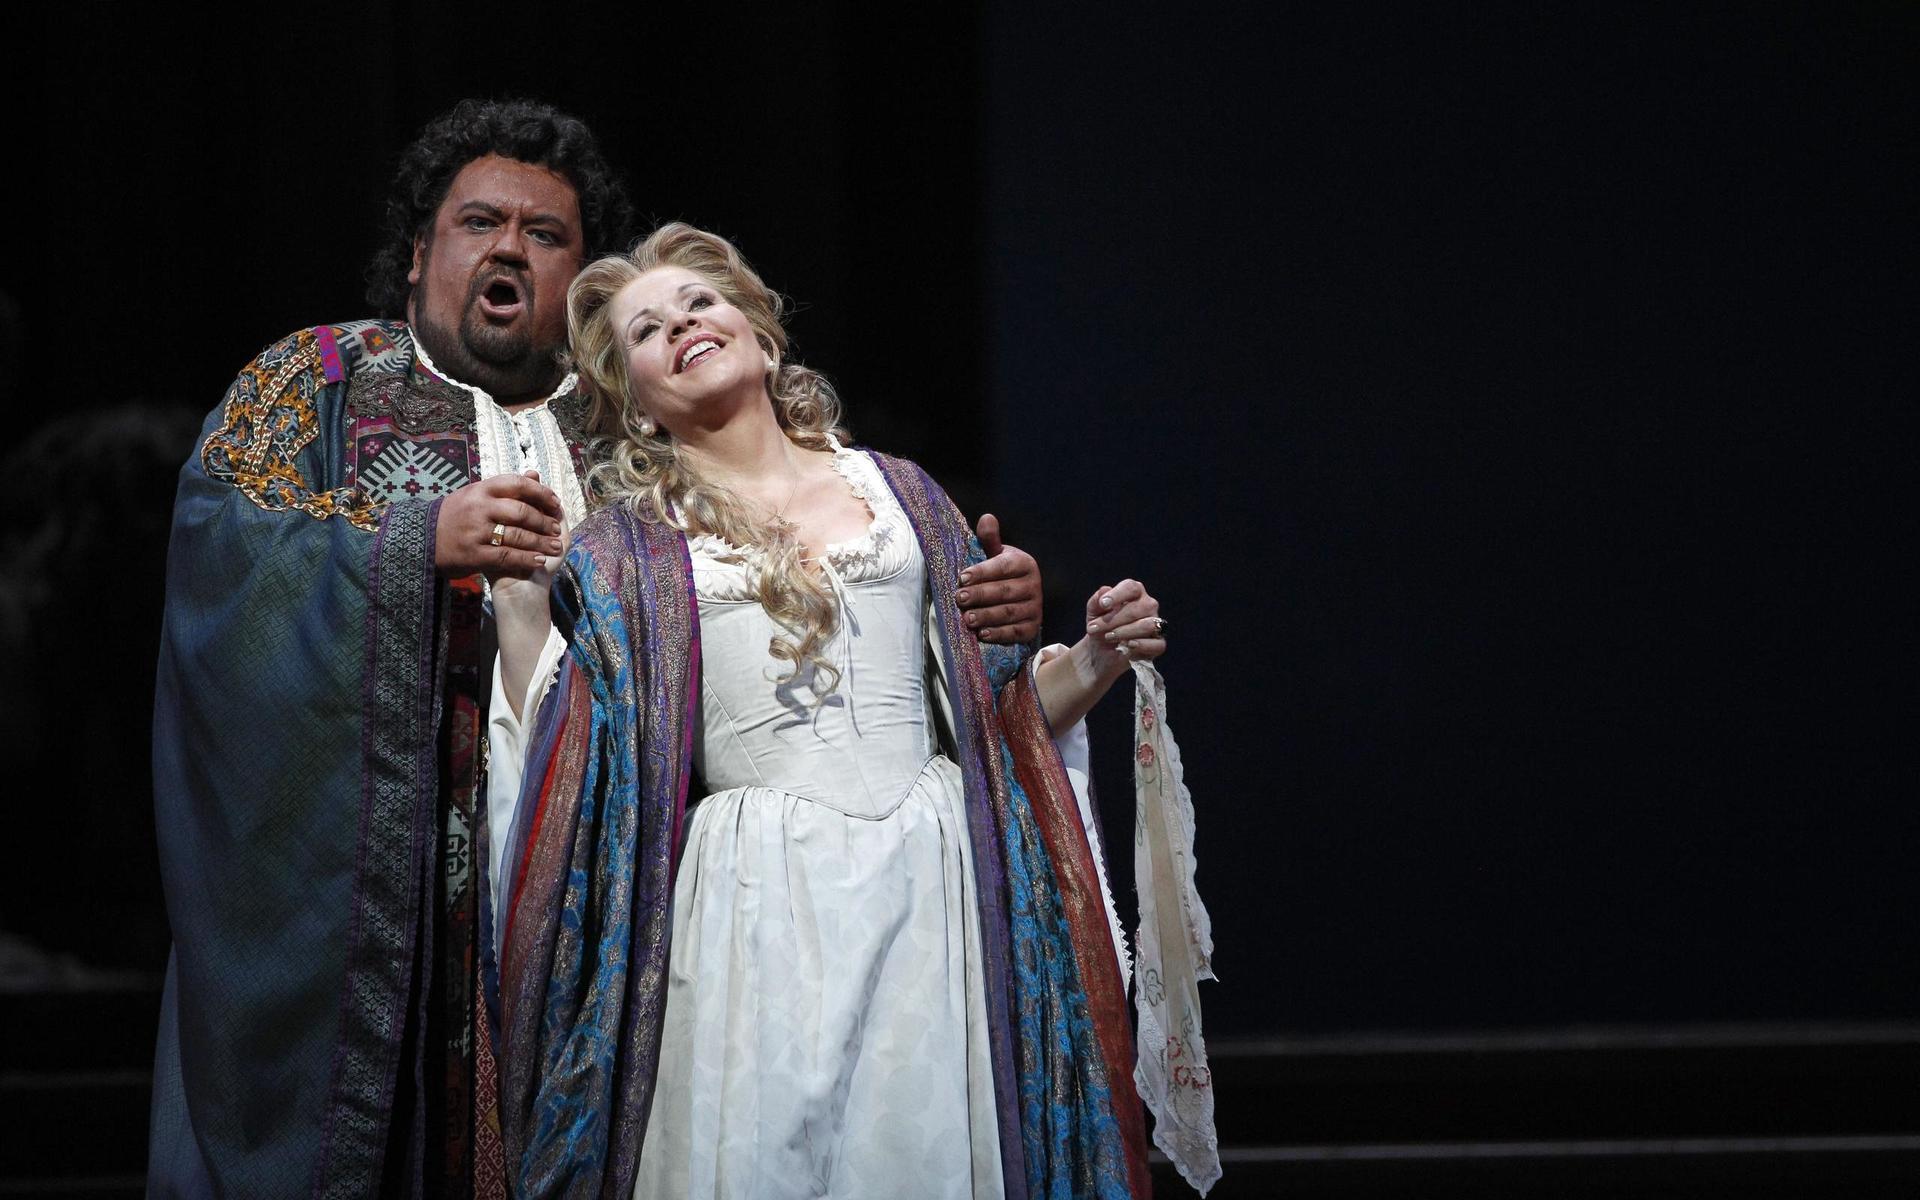 Ett av världens mest berömda operahus, Metropolitan i New York, lägger upp en föreställning om dagen. Den 11-17 januari har de temat den amerikanska sopranen Renée Fleming. På bilden ser vi Renee Fleming 2012 som Desdemona i Verdis &quot;Otello&quot;.